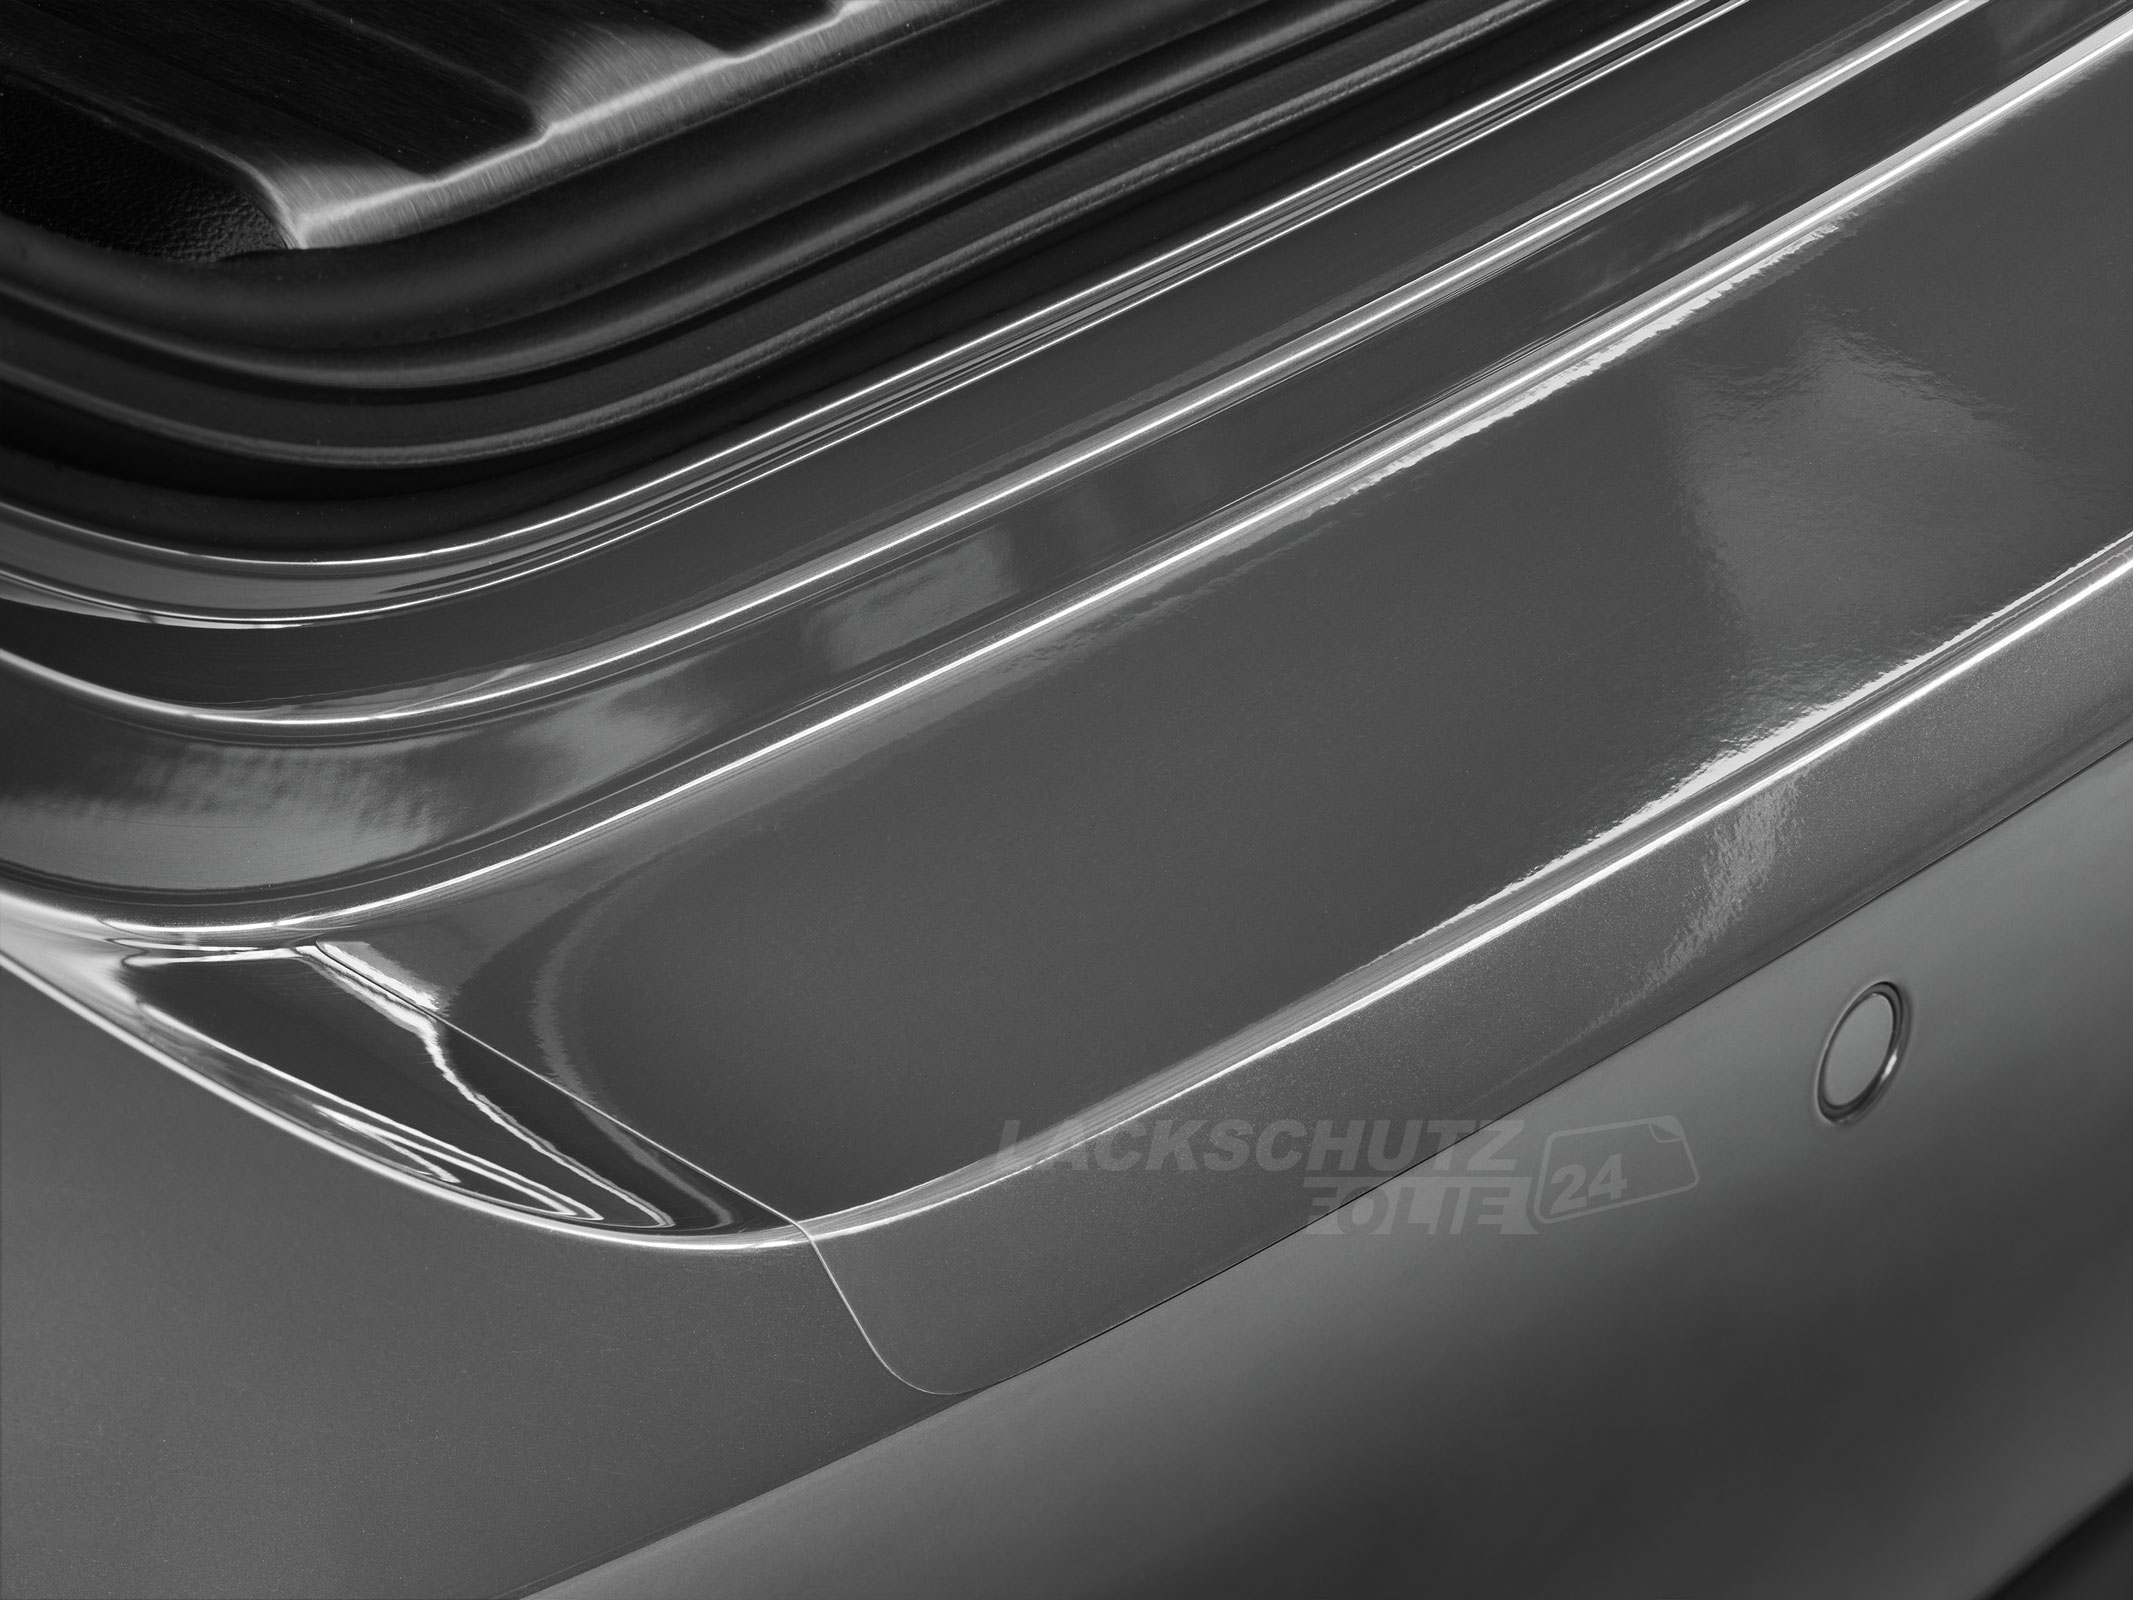 Ladekantenschutzfolie - Transparent Glatt Hochglänzend 240 µm stark für Fiat Punto EVO ab BJ 10/2009